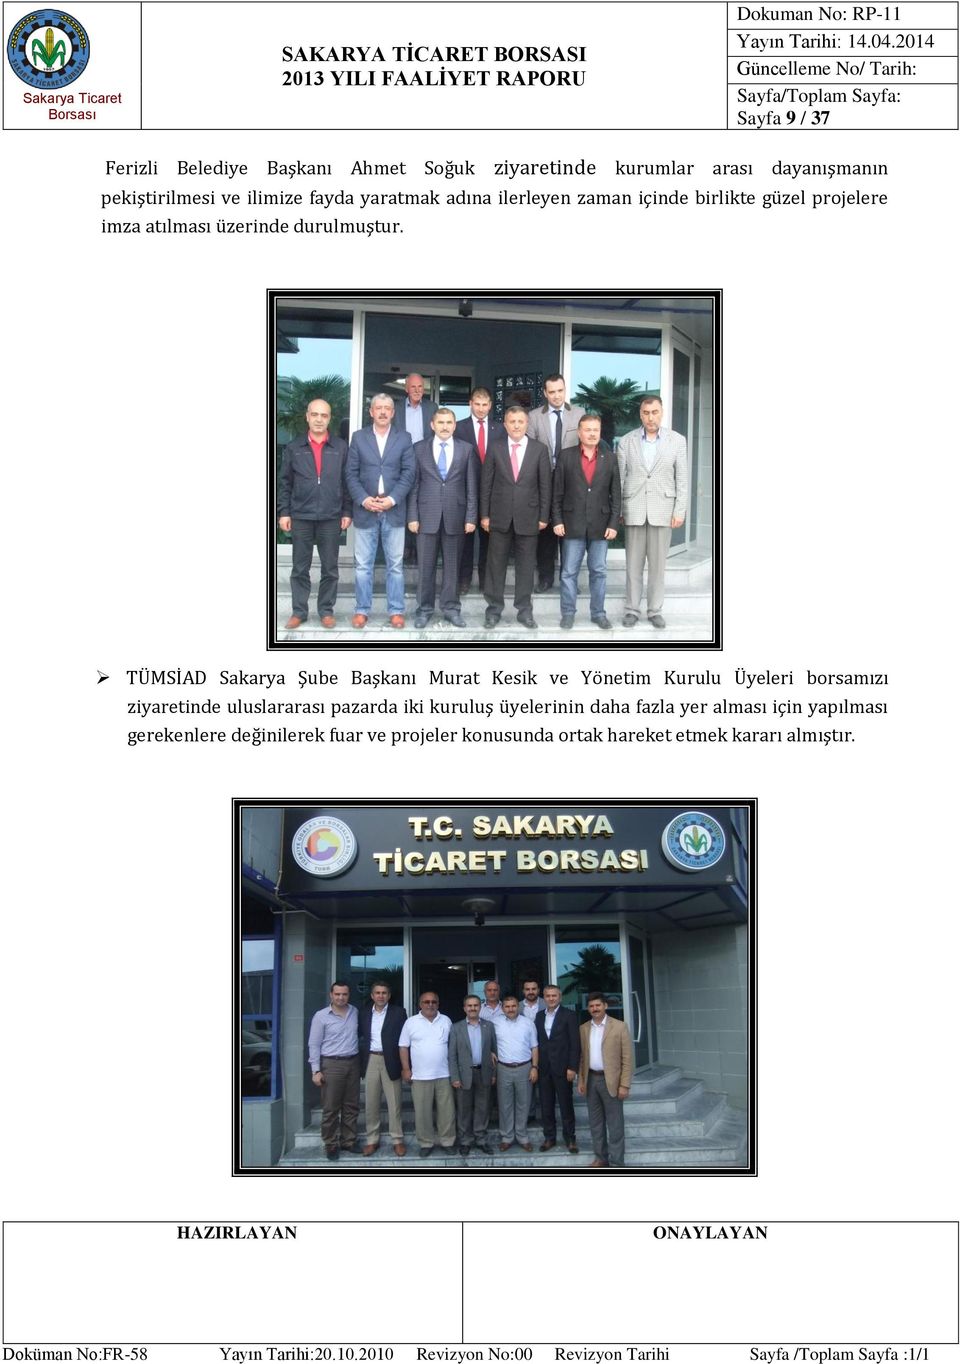 TÜMSİAD Sakarya Şube Başkanı Murat Kesik ve Yönetim Kurulu Üyeleri borsamızı ziyaretinde uluslararası pazarda iki